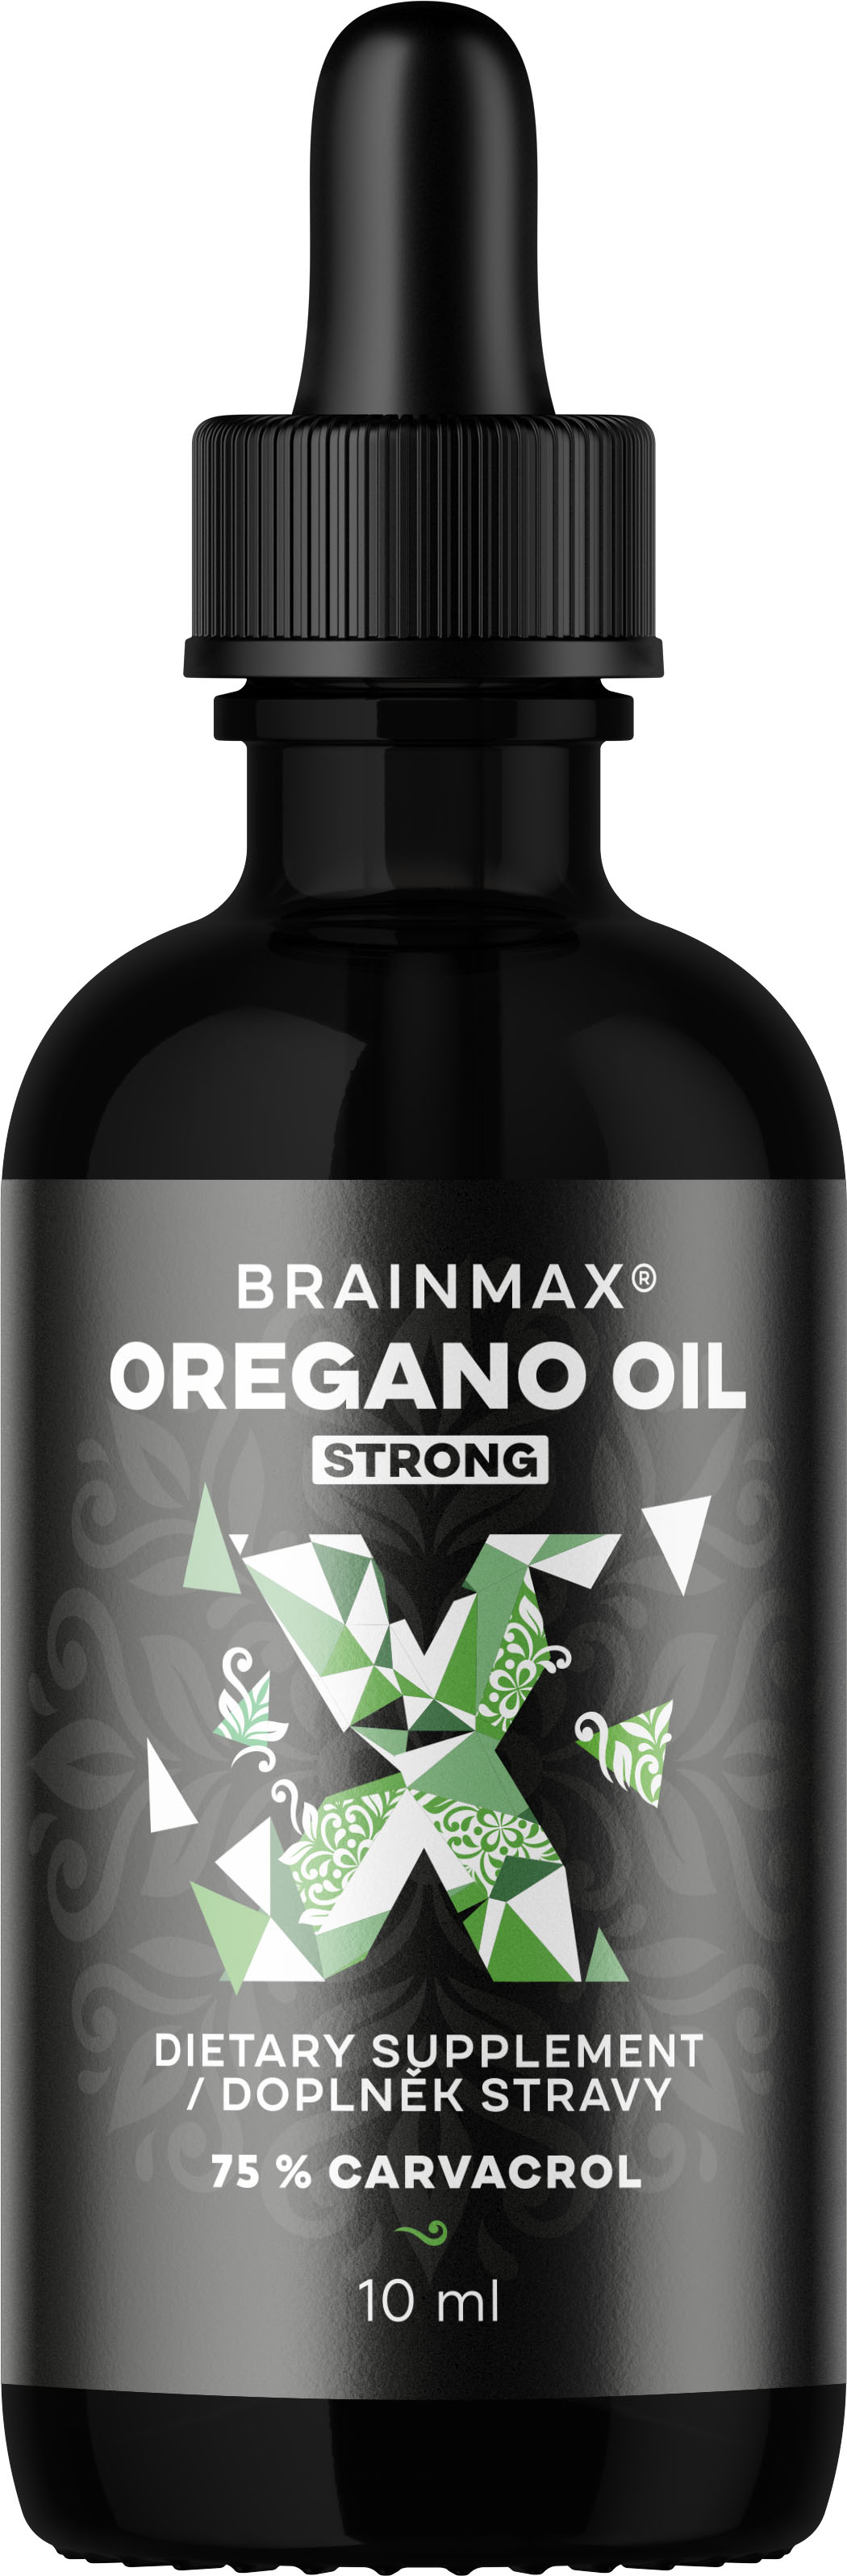 BrainMax Oregano oil, oregánový olej, 10 ml Olej z oregana s obsahem 75% karvakrolu, doplněk stravy